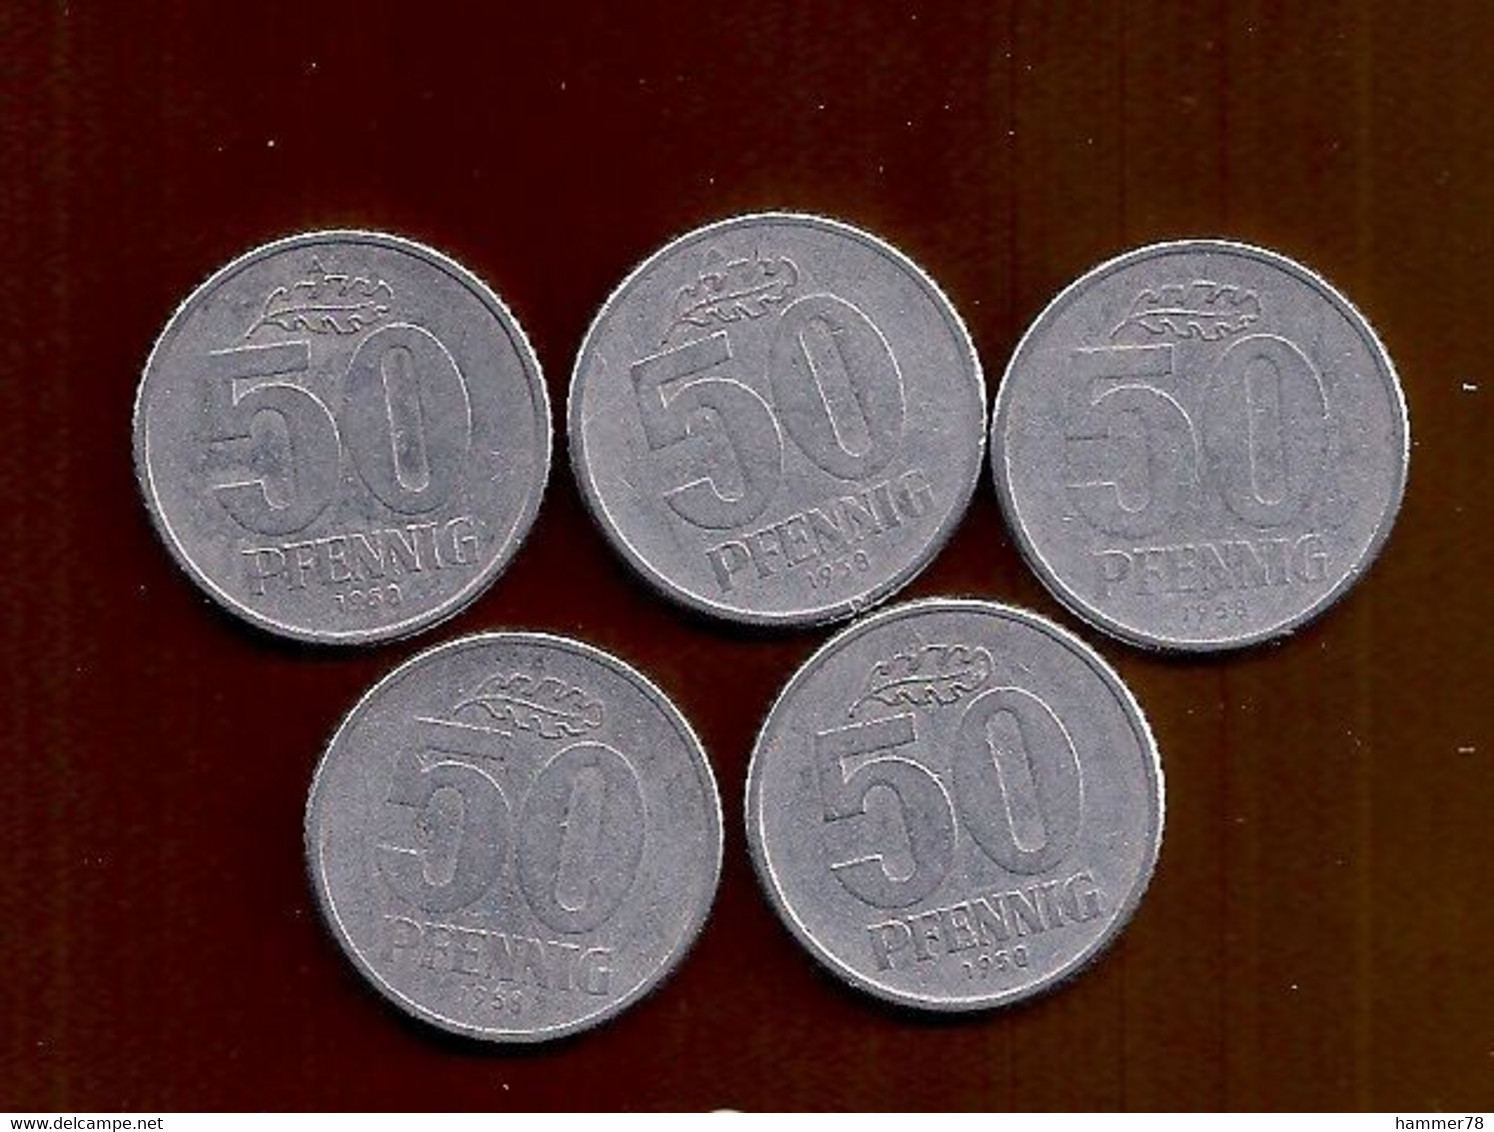 DDR GDR 1958 - 1989 12coins 50 PFENNIG 5 PFENNIG 1 PFENNIG - 50 Pfennig